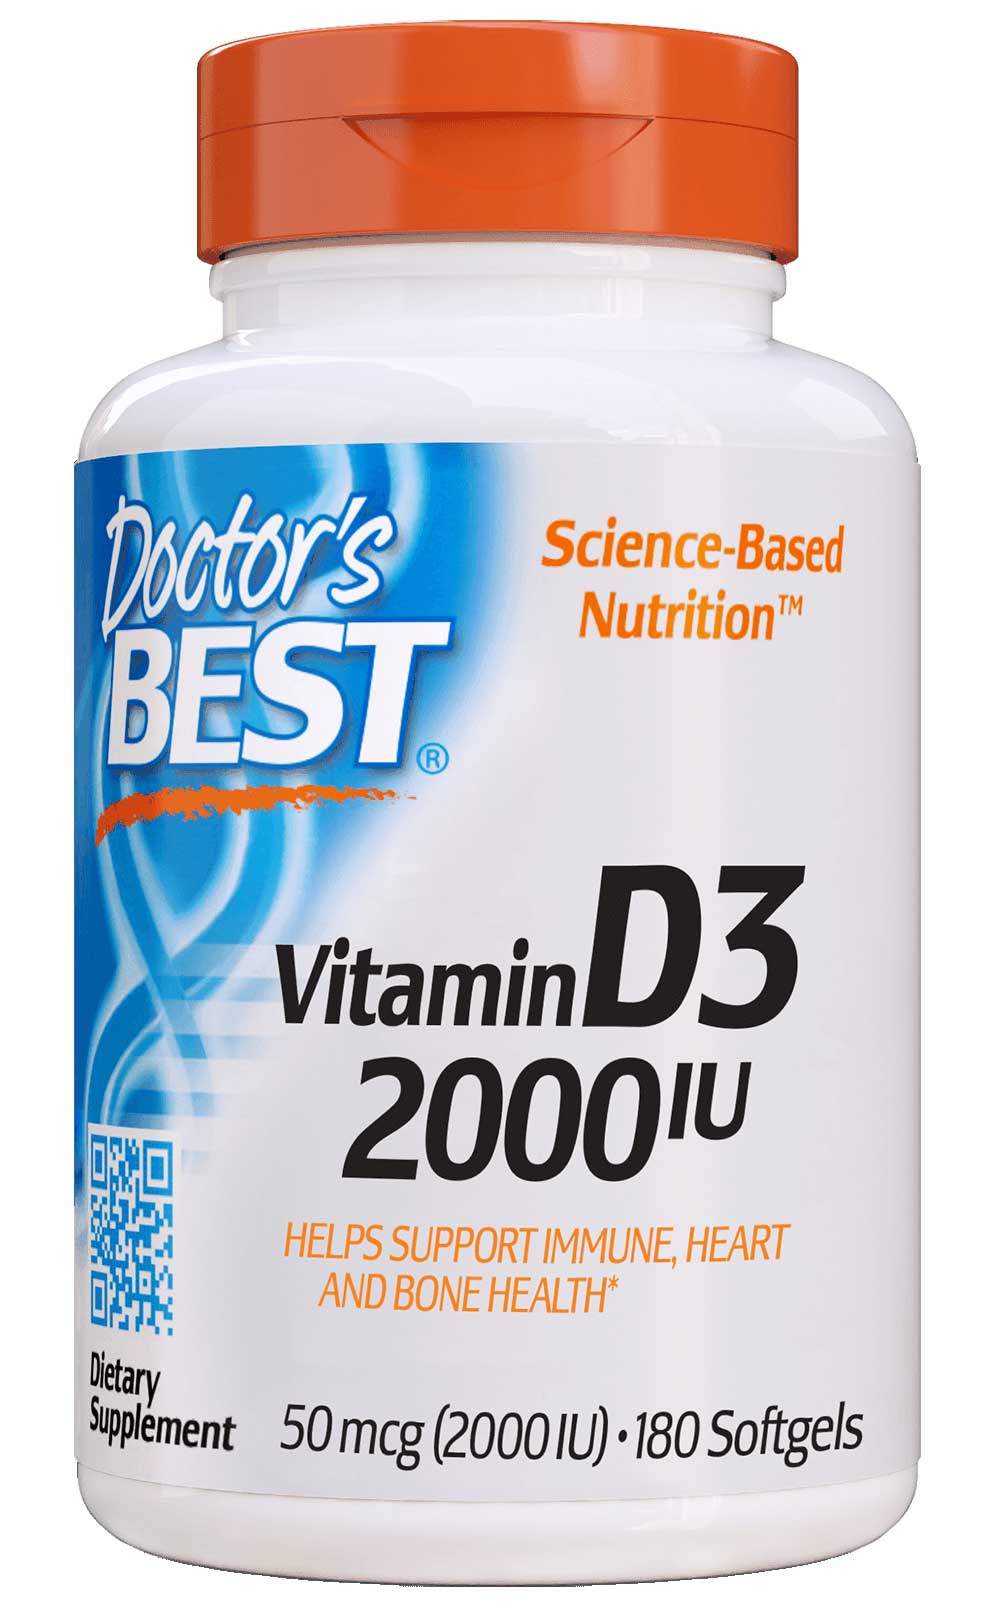 Doctor's Best Vitamin D3 2000IU